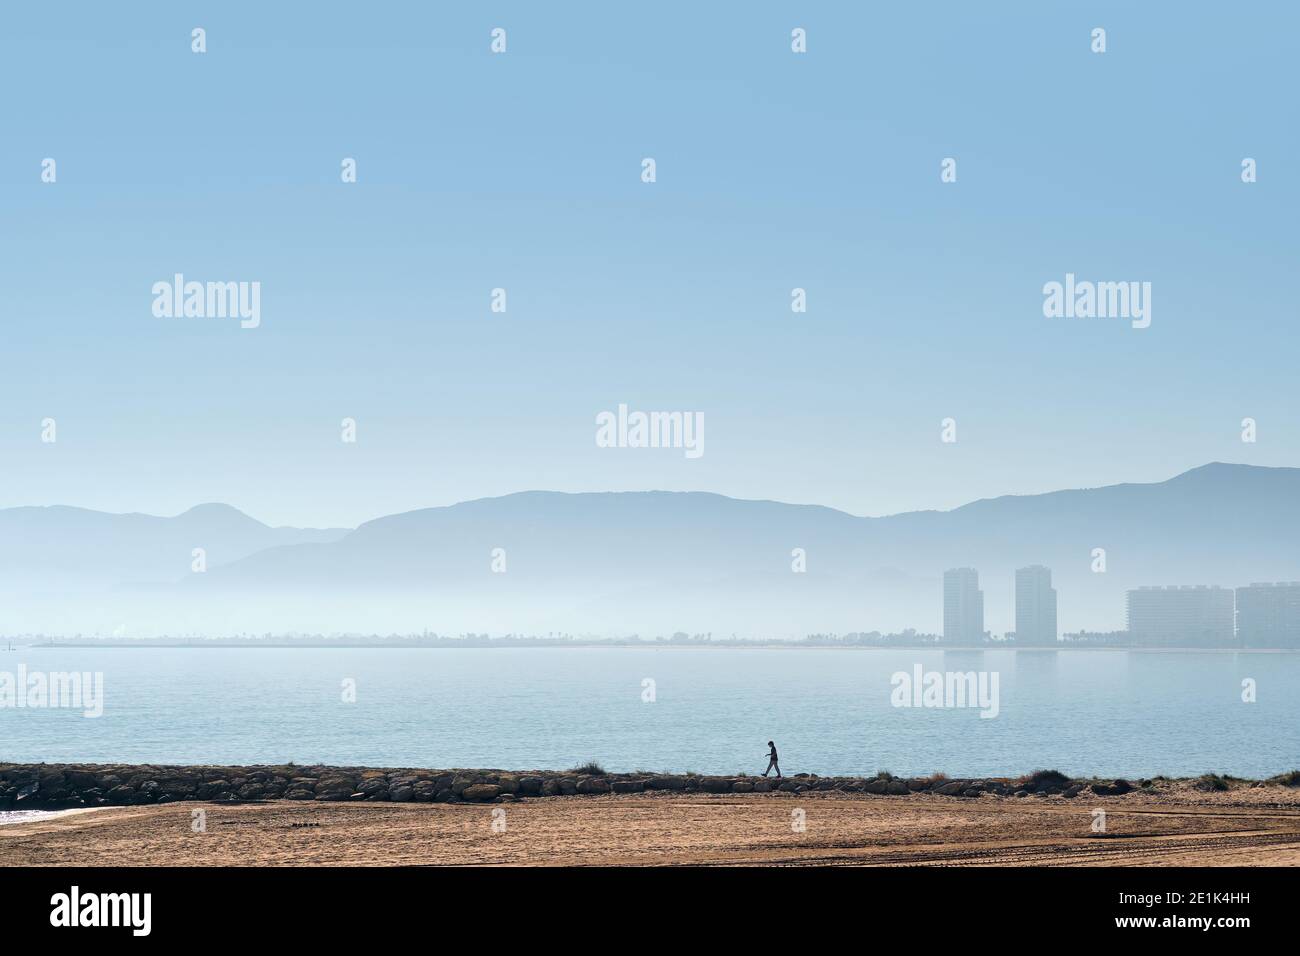 Plage de sable vide et silhouette de la ville de Cullera. Vue sur la mer Méditerranée, ciel nuageux et paysage brumeux et brumeux. Province Banque D'Images